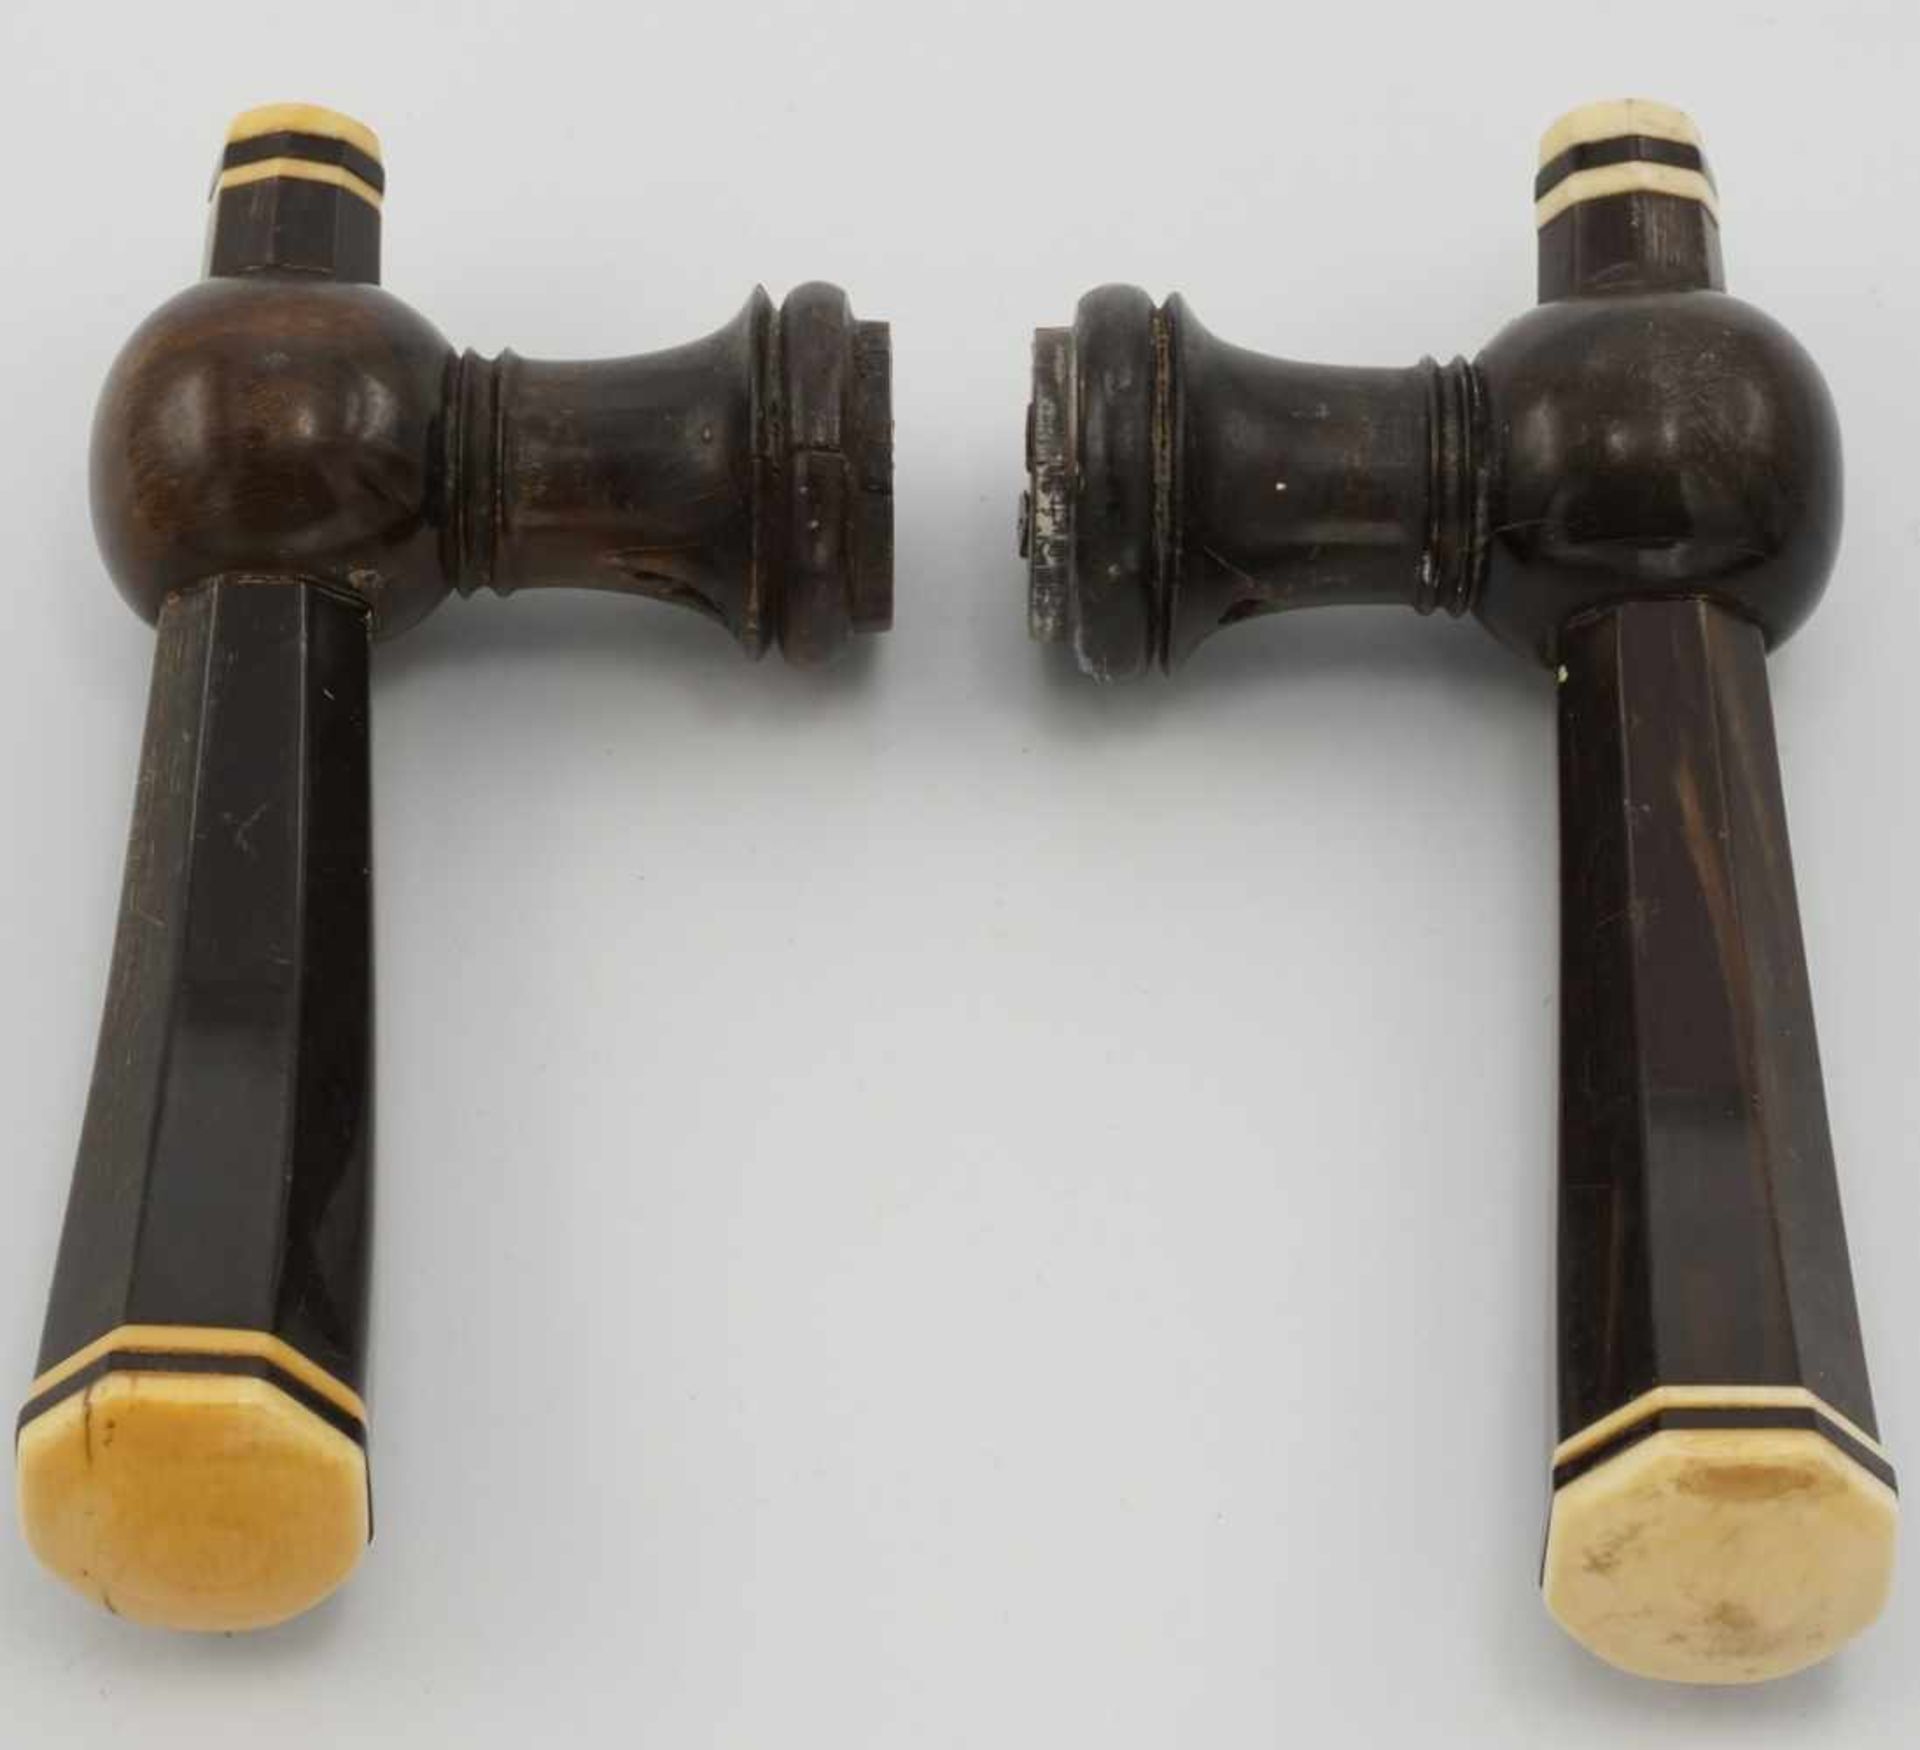 Paar Horn-Türklinken, 19. Jh.geschnittenes Horn und Elfenbein, altersgemäßer Zustand, 12,5 x 6 cm ( - Bild 2 aus 2